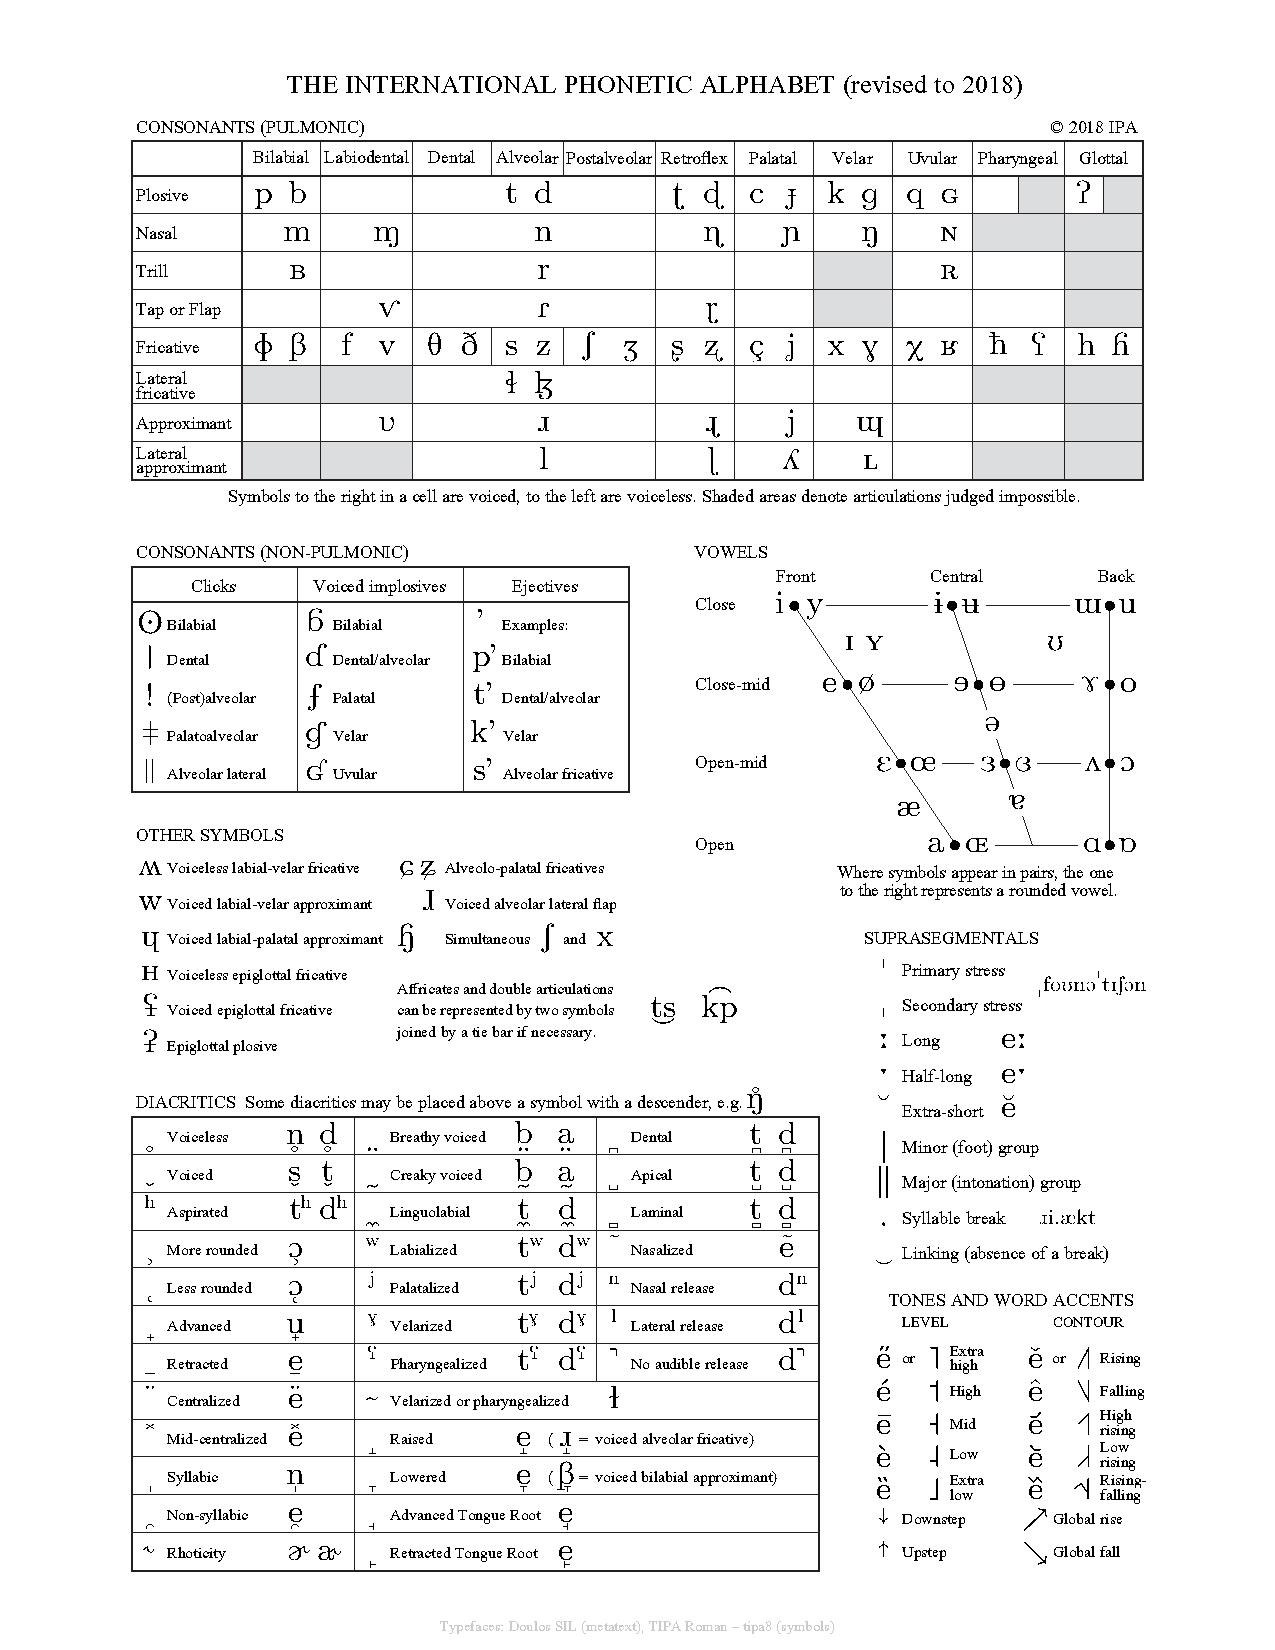 Phonetic Alphabet To English - History Of The International Phonetic Alphabet Wikipedia